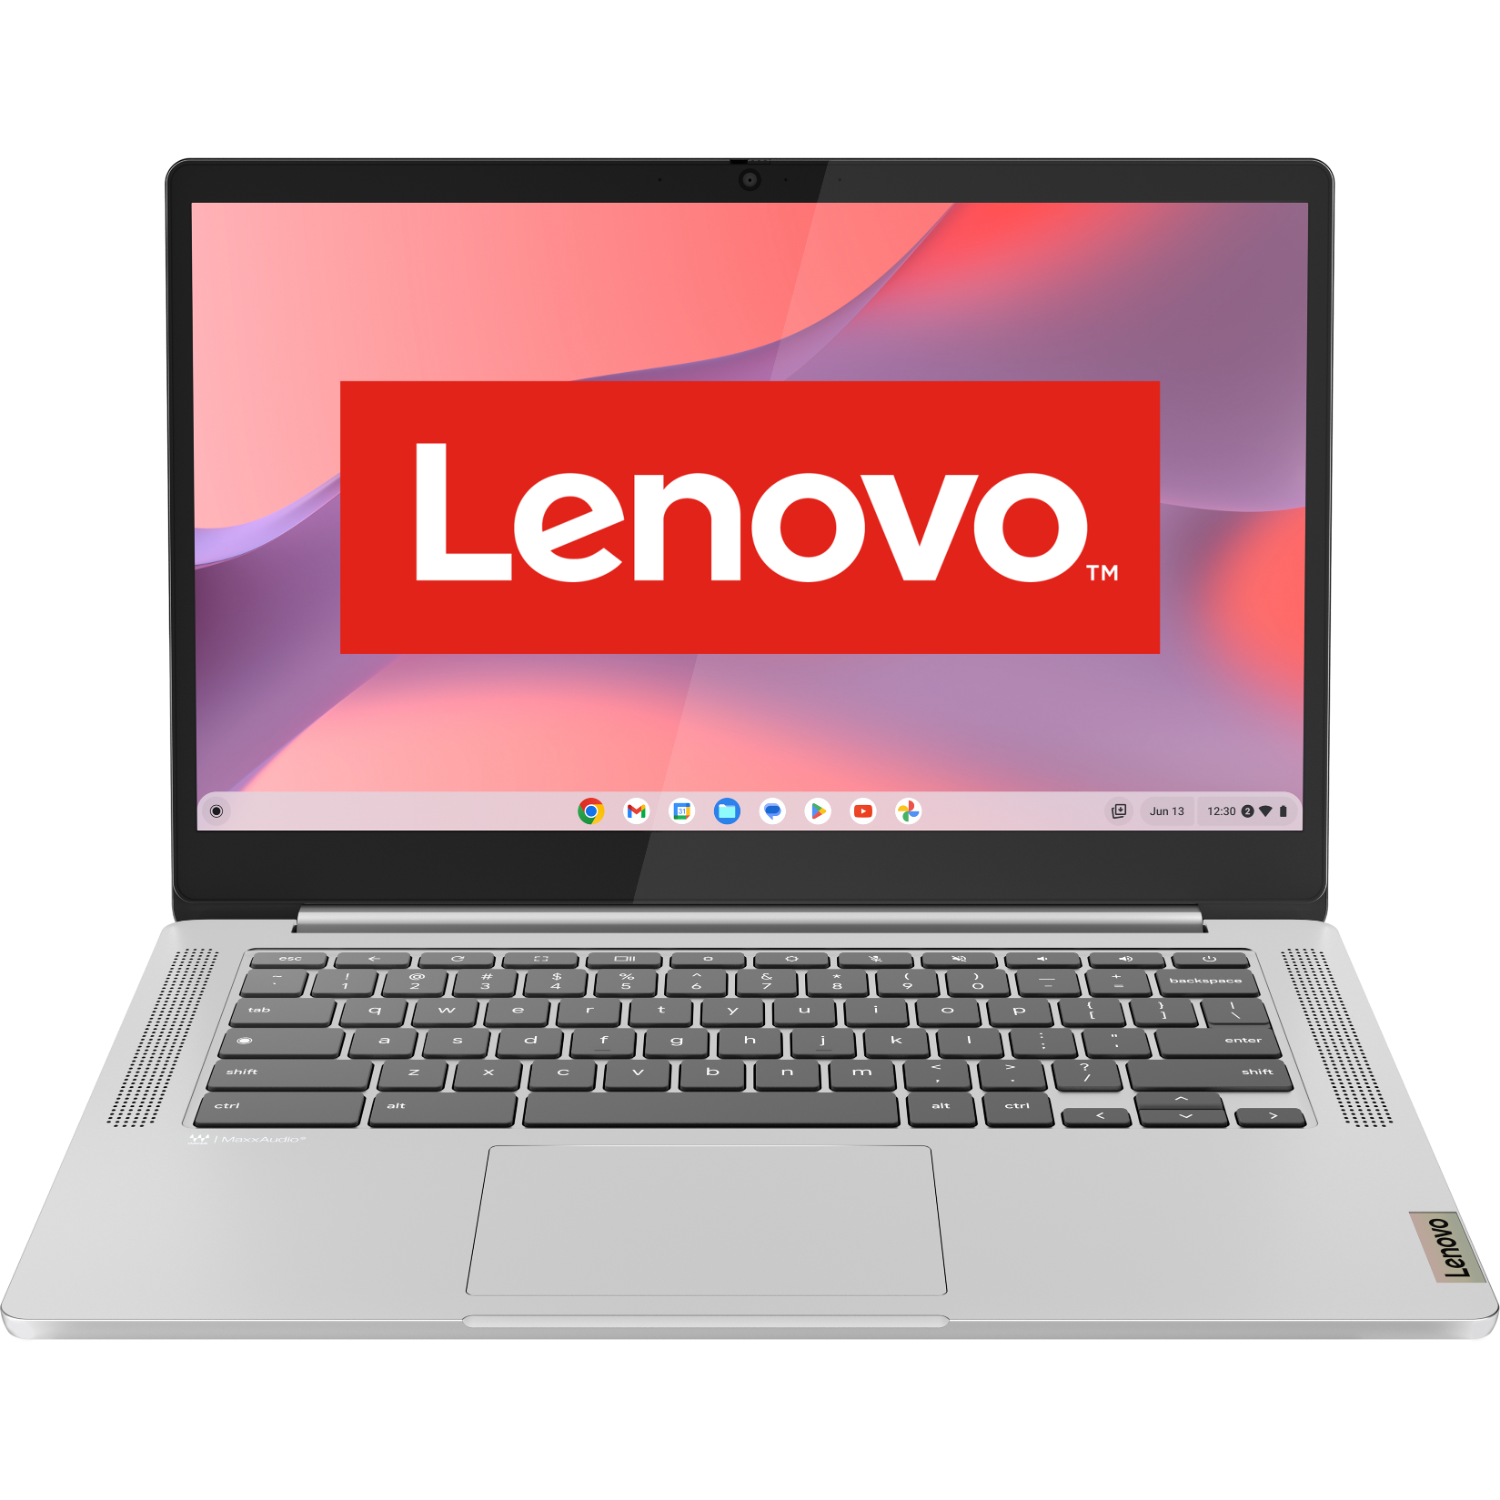 Lenovo Ideapad Slim 3 Chrome 14m868 - 14 Inch Mediatek 4 Gb 64